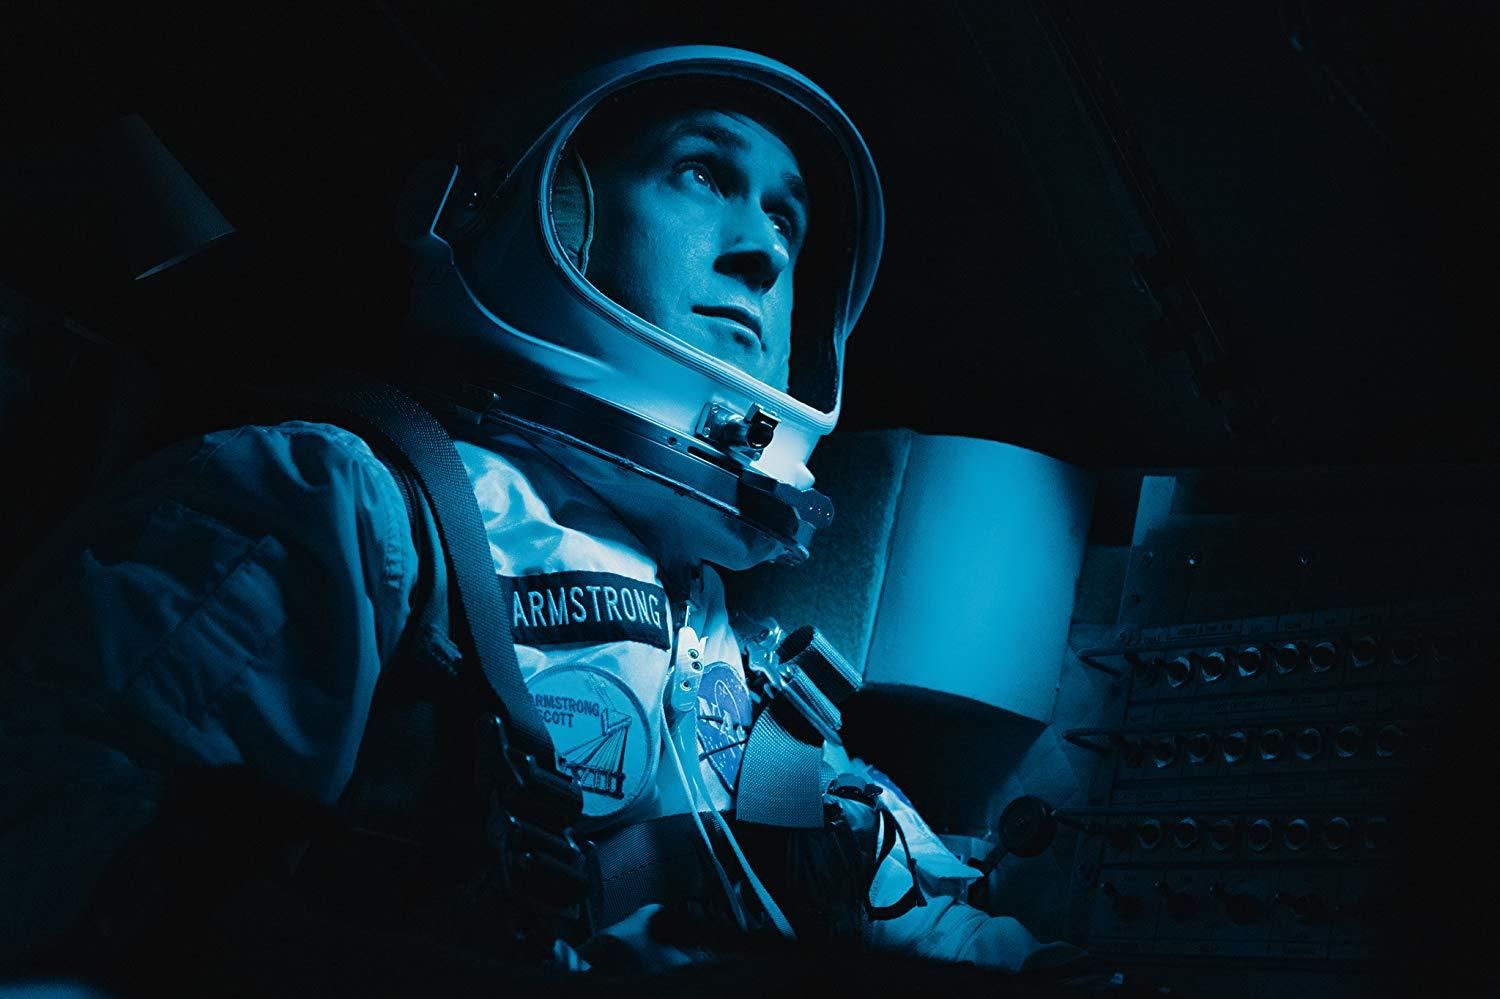 Фильм об Армстронге "Человек на Луне" представил финальный трейлер